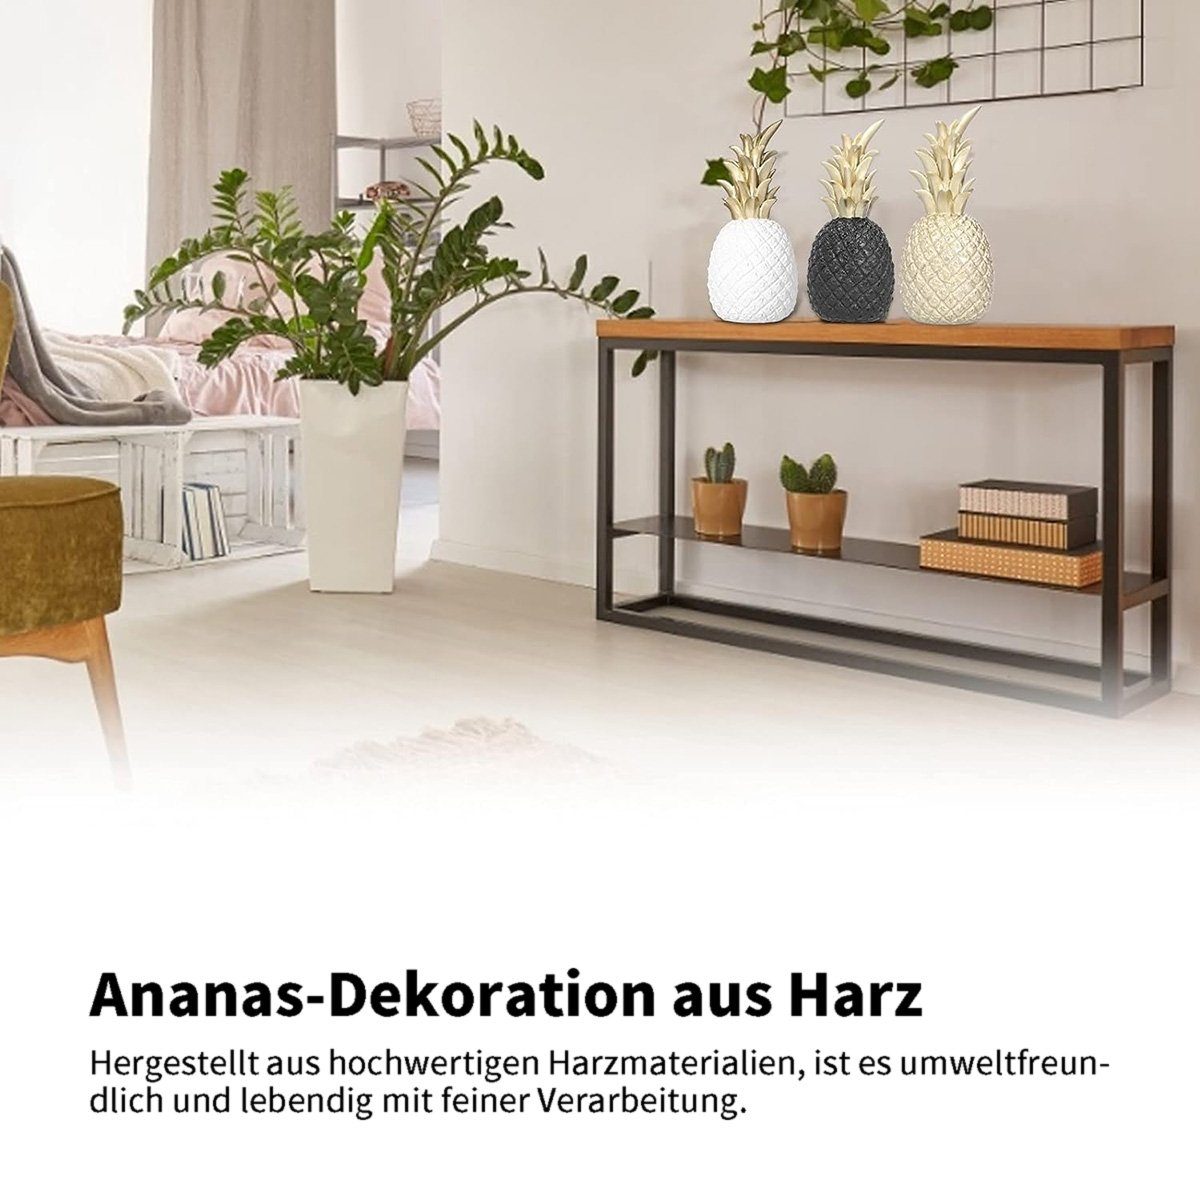 götäzer große Weiss INS Wohnzimmer-TV-Schrank, Click-Ornamente Wohnaccessoires Tischdekoration, kreative Ananas-Ornamente,